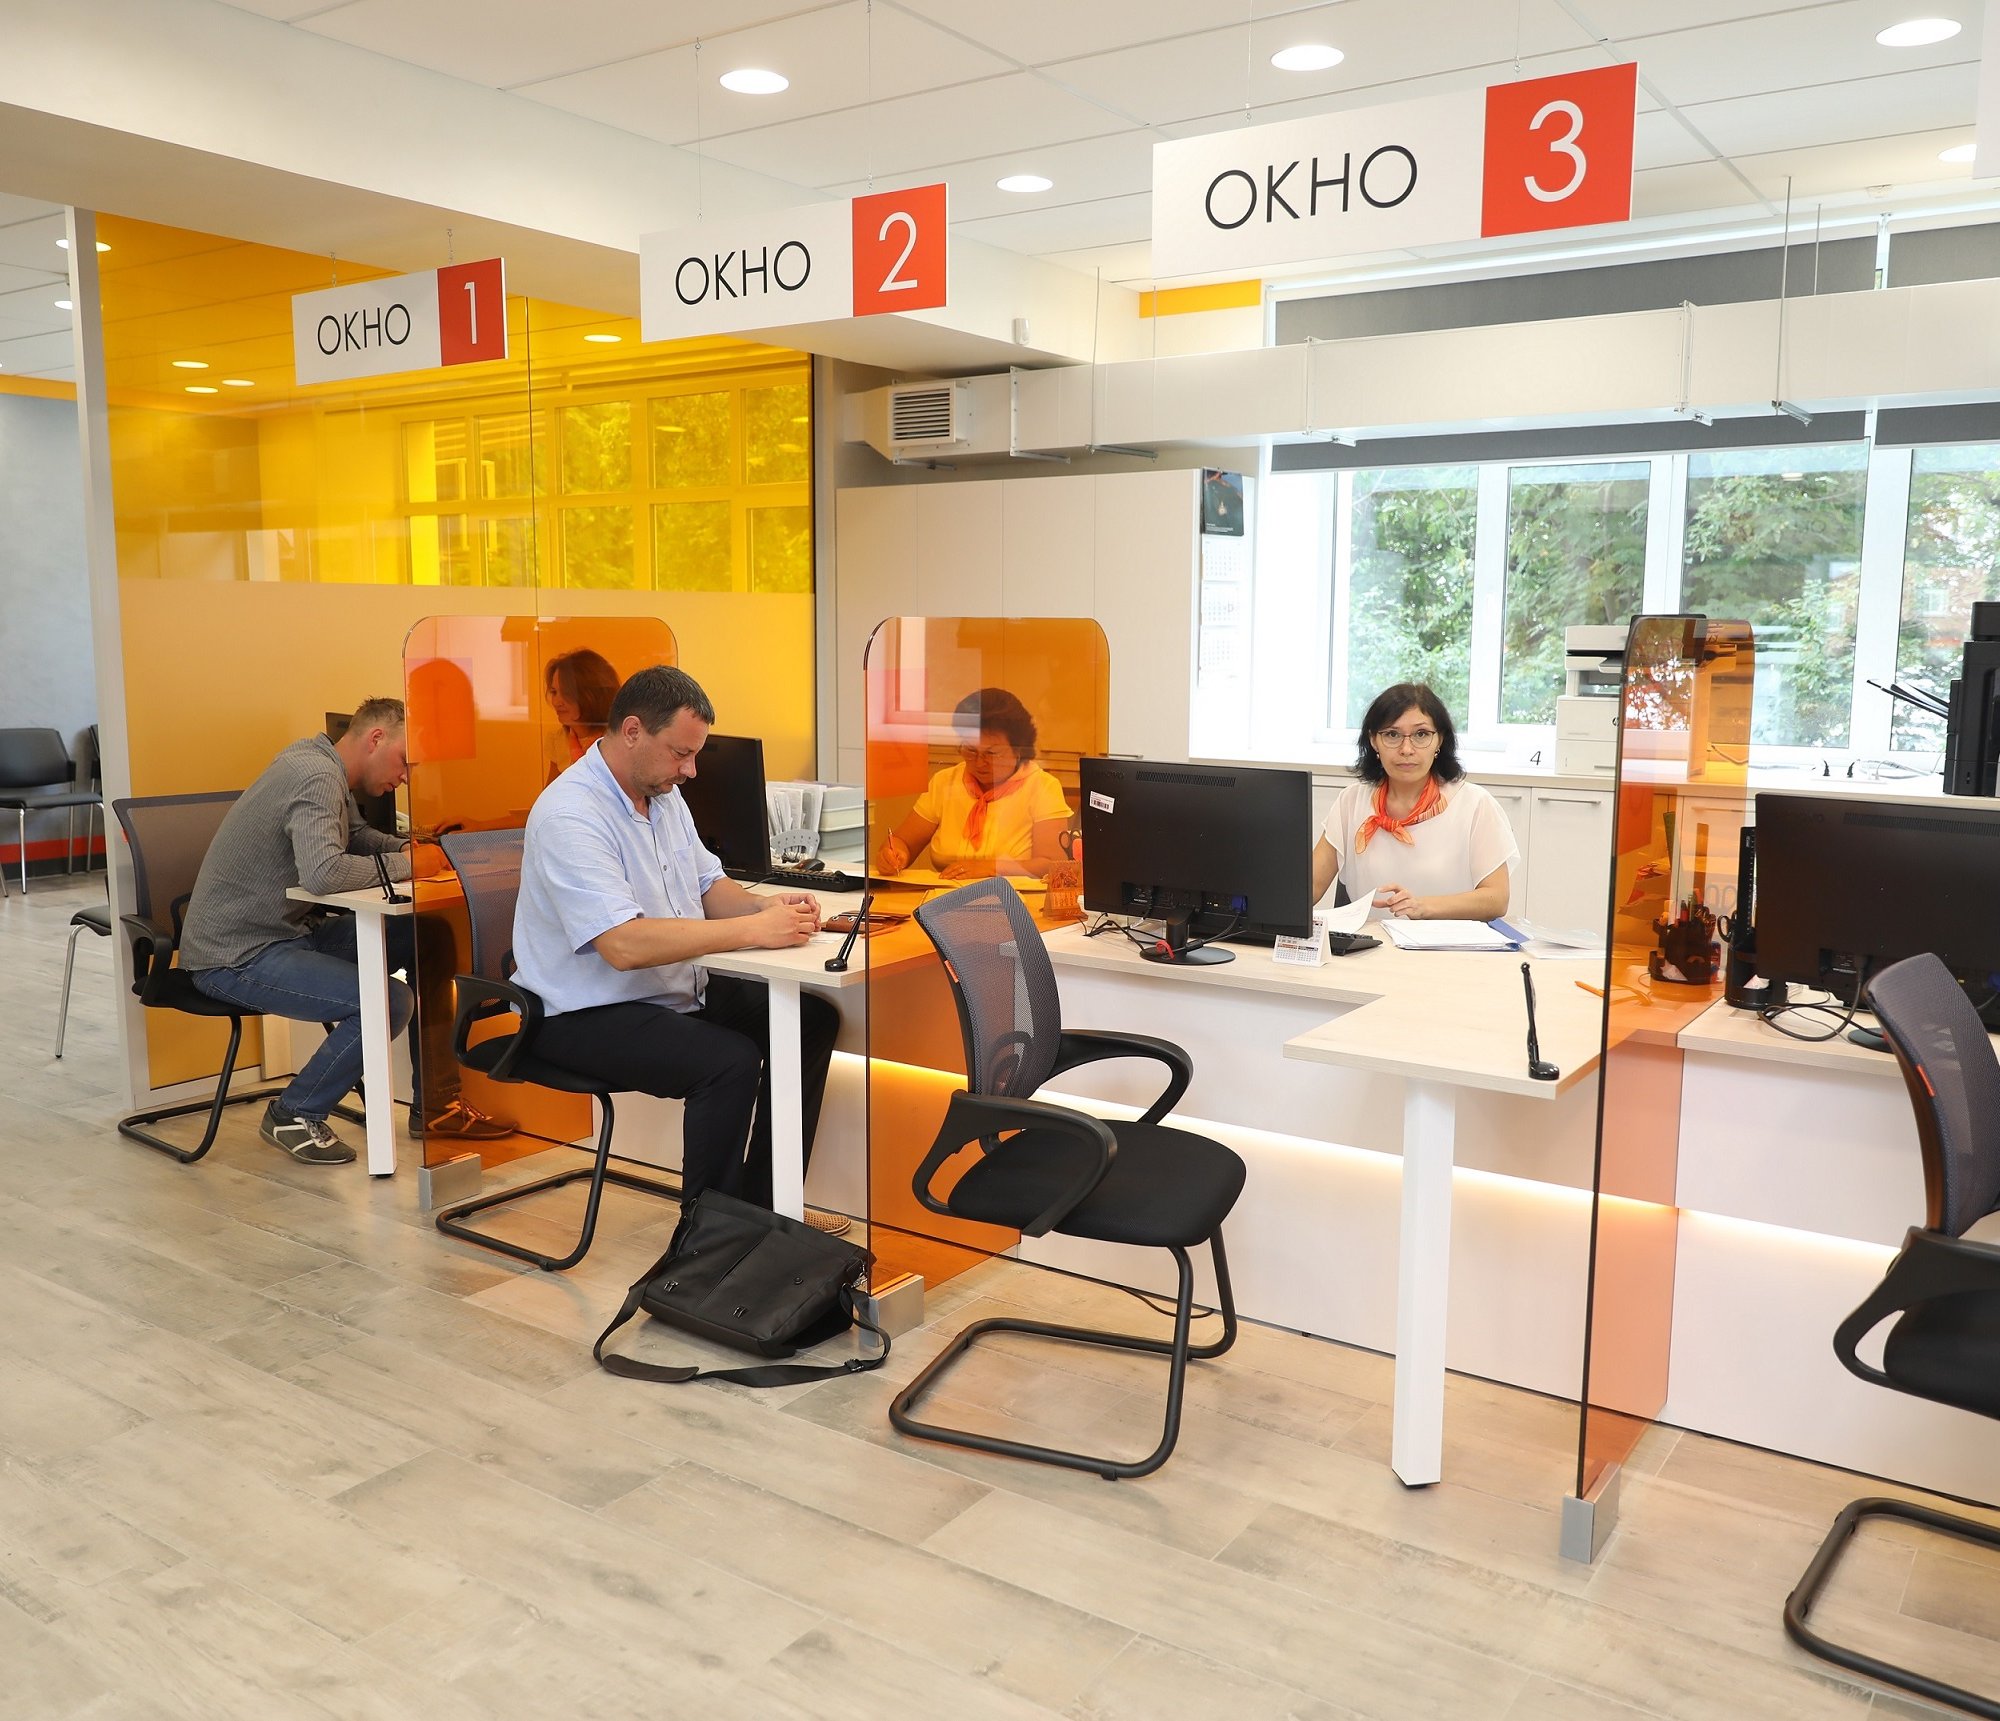 ЕВРАЗ НТМК открыл современный офис для соискателей и сотрудников предприятия